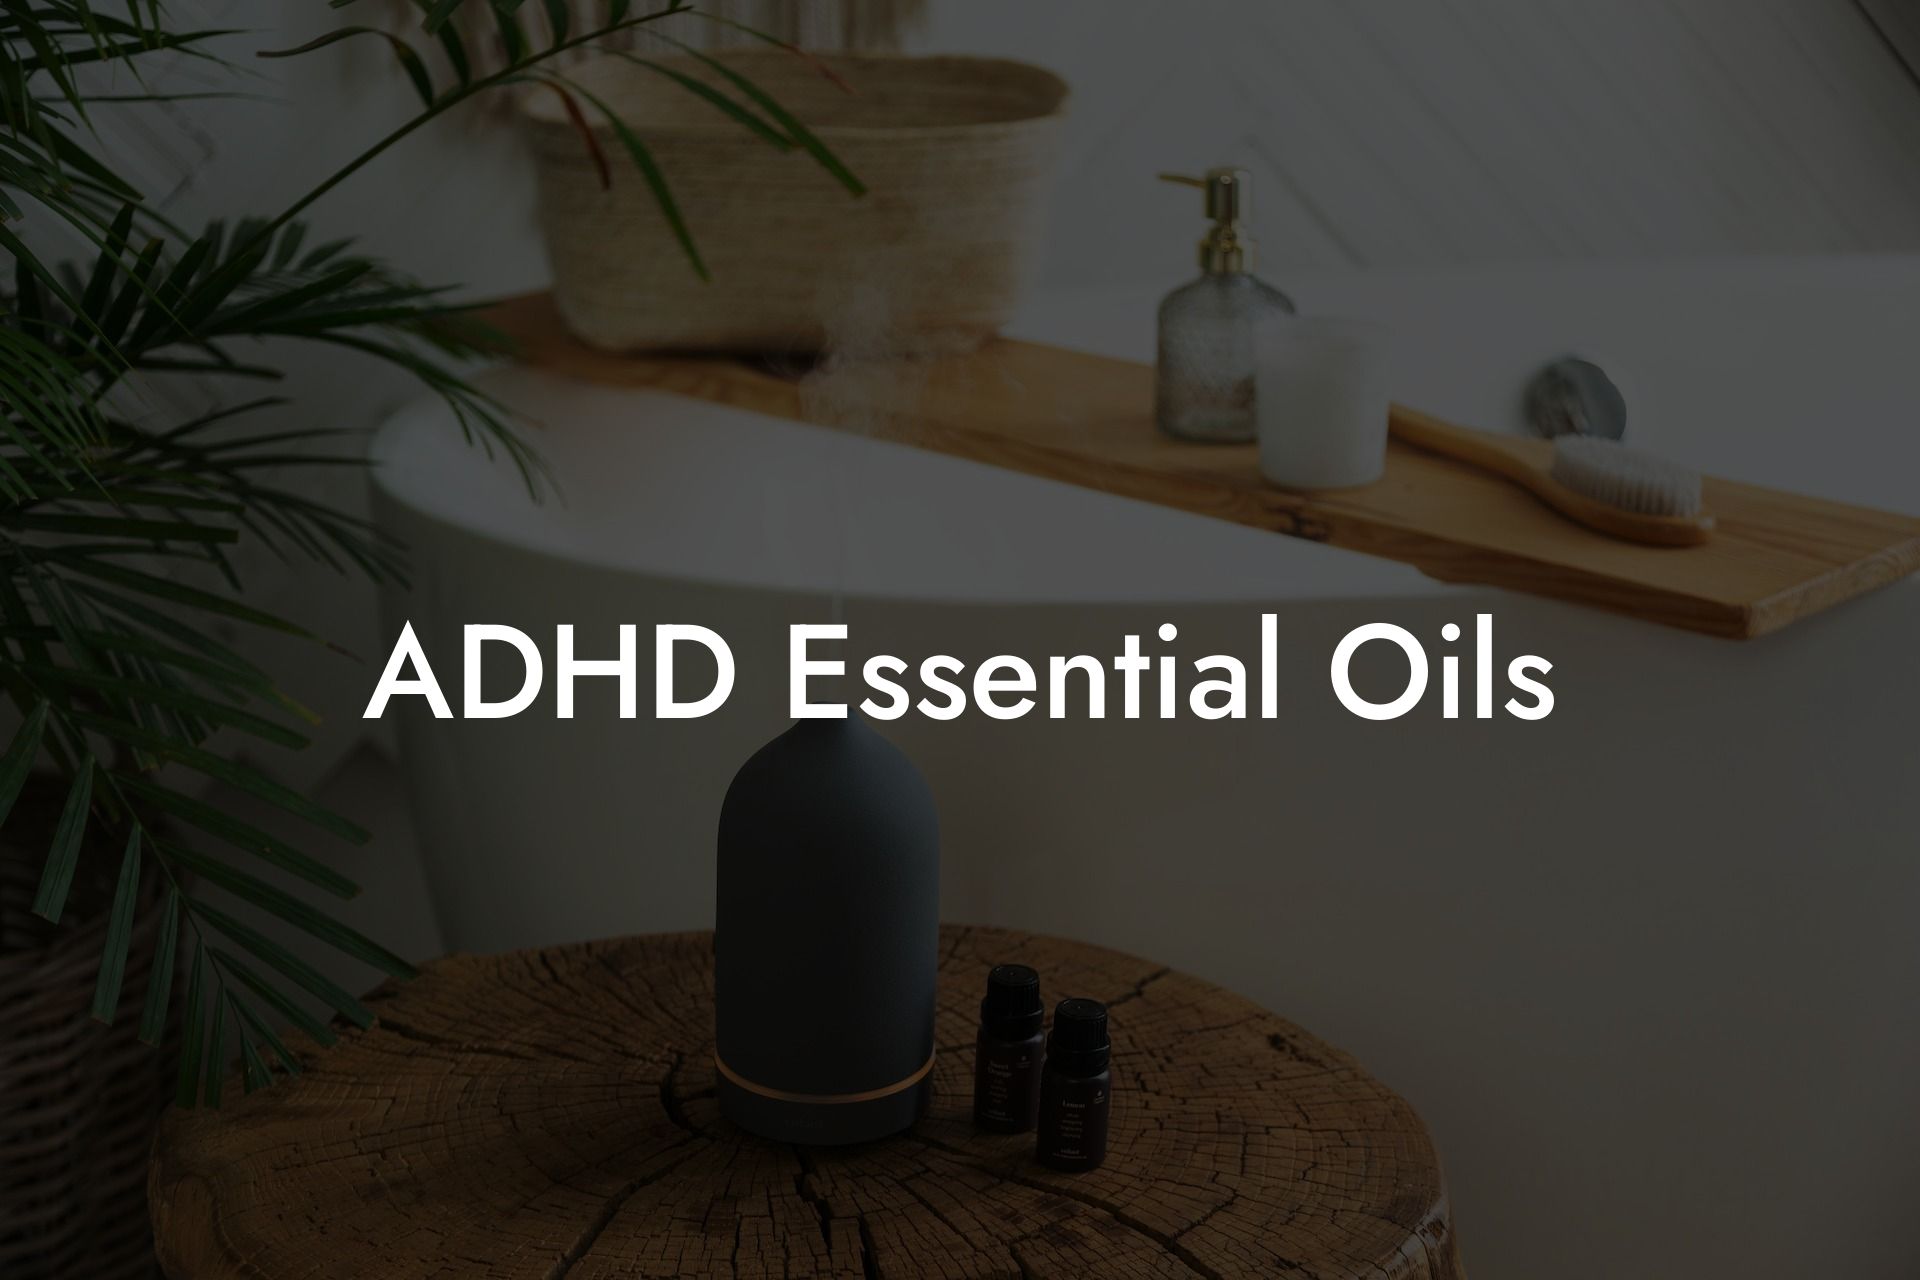 ADHD Essential Oils